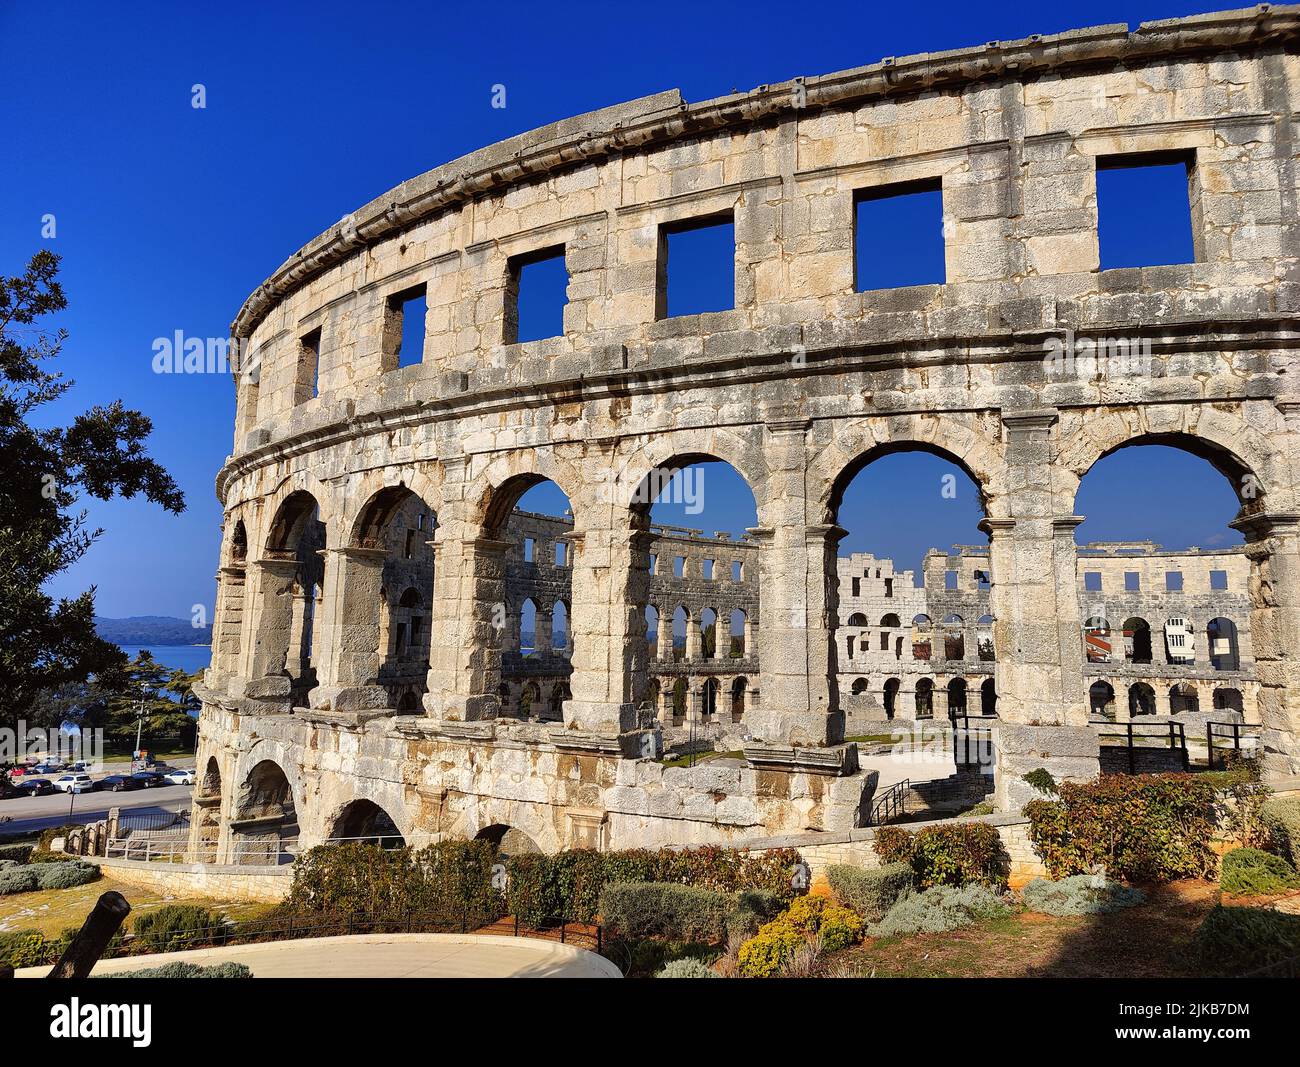 Croacia. Pula. Ruinas del anfiteatro romano mejor conservado construido en el siglo I dC durante el reinado del emperador Vespasiano. Foto de stock